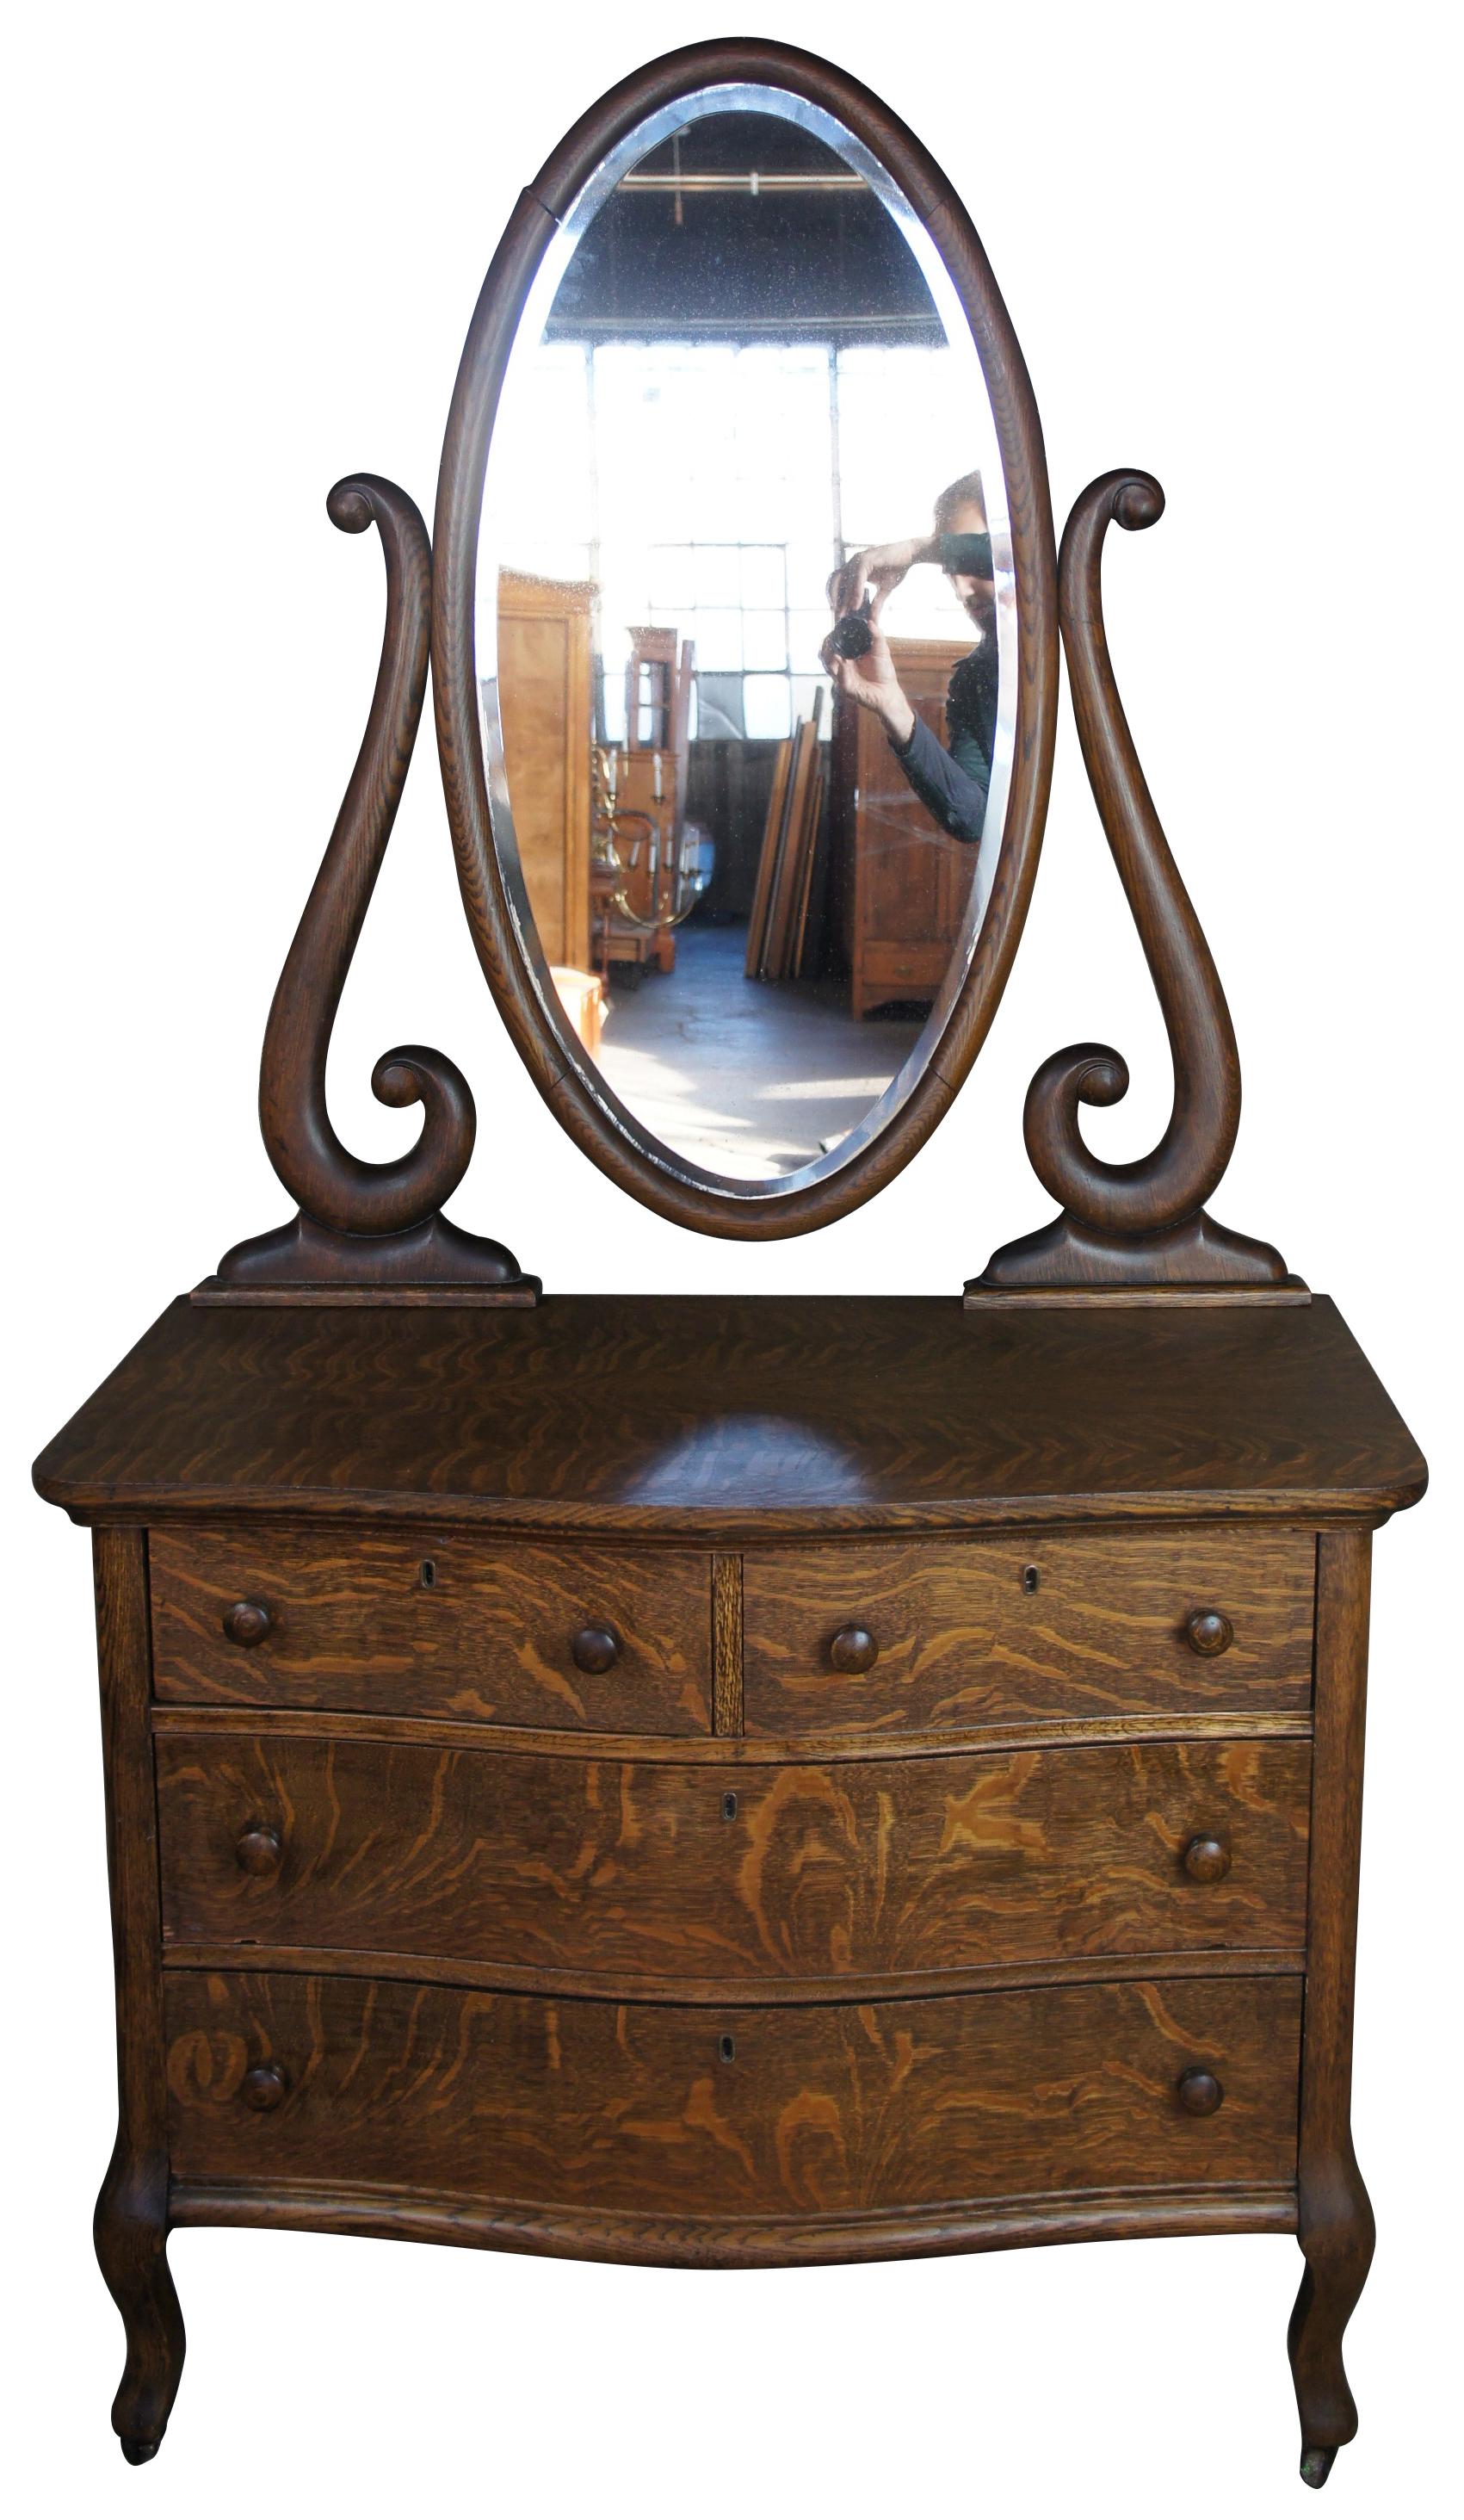 19th century Victorian Quartersawn oak mirrored dresser chest vanity wash stand

